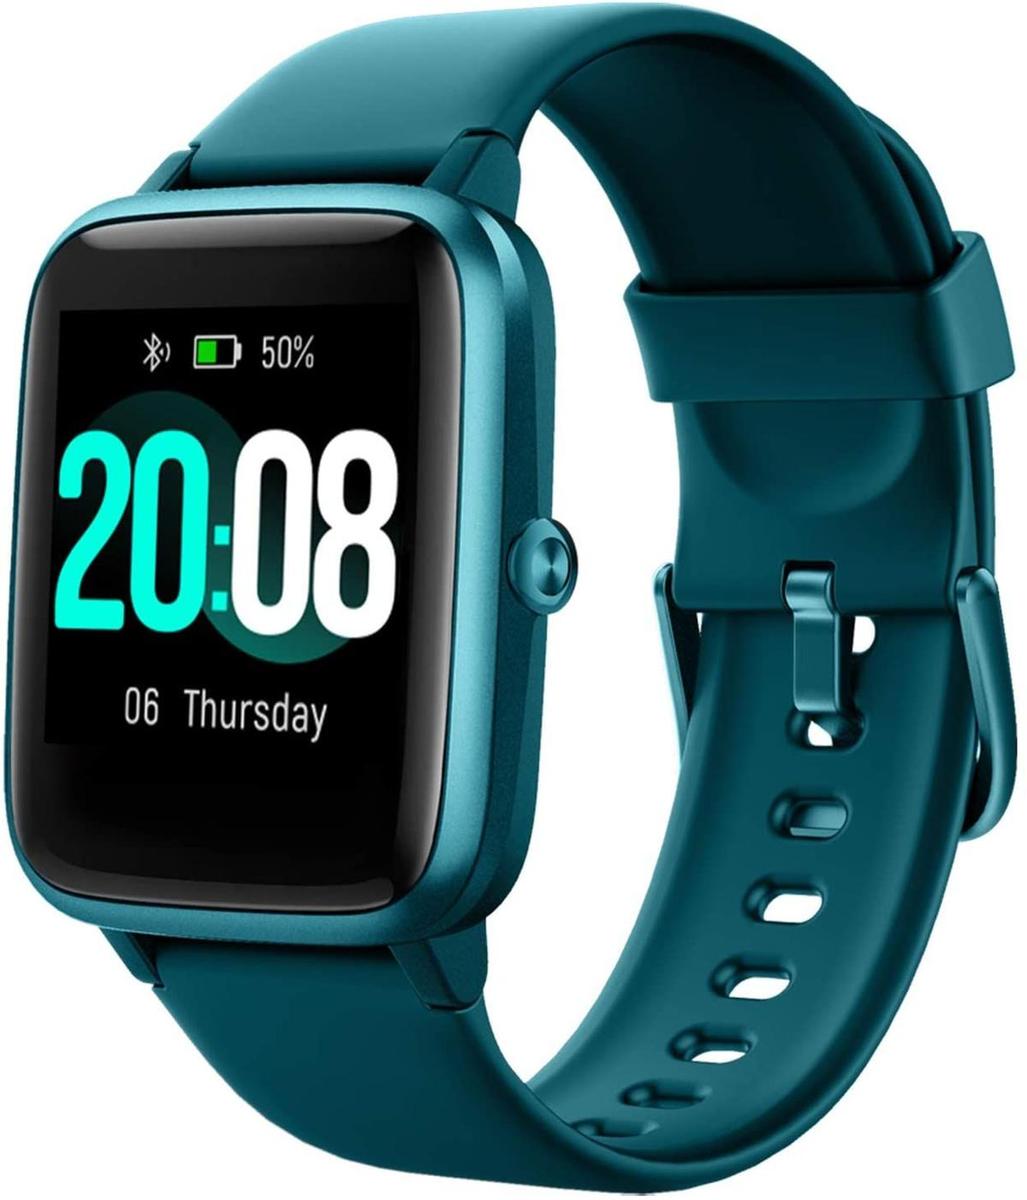 Smartwatch multifunción en color turquesa